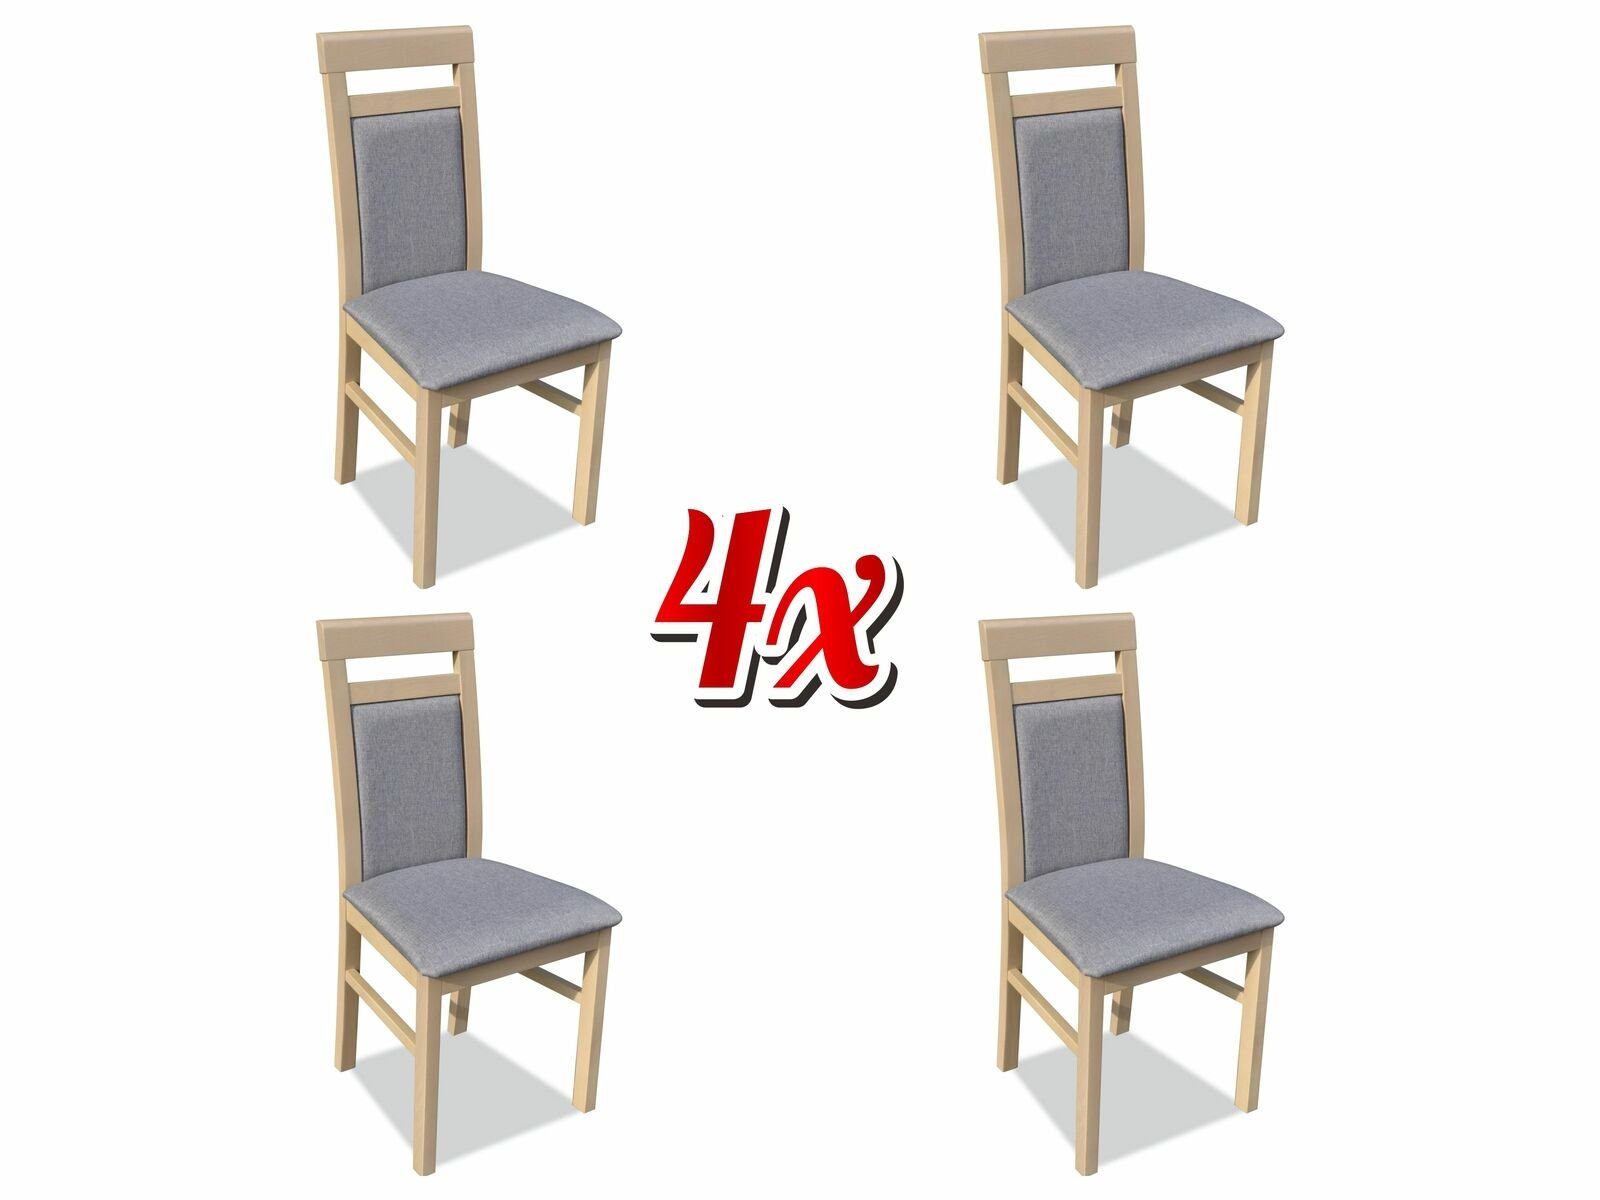 JVmoebel Stuhl, Gruppe Stühle Garnitur Textil Stoff Holz Gepolsterte Esszimmer Stühle 4x Stuhl